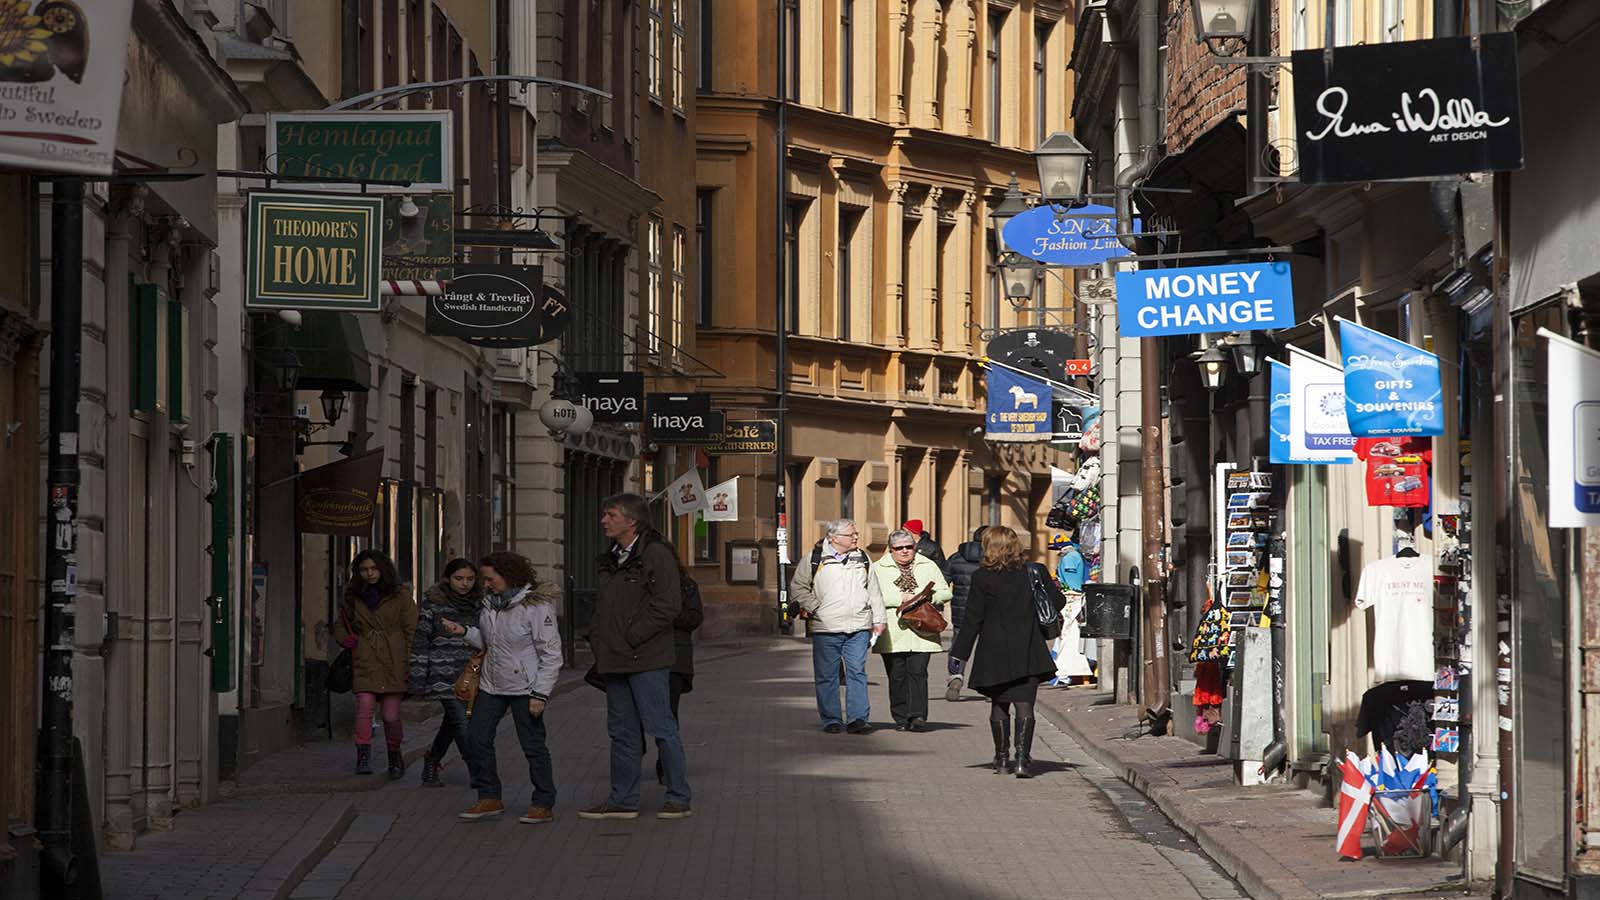 لبنانيون في السويد لـ"المدن": هذا ما يحصل معنا